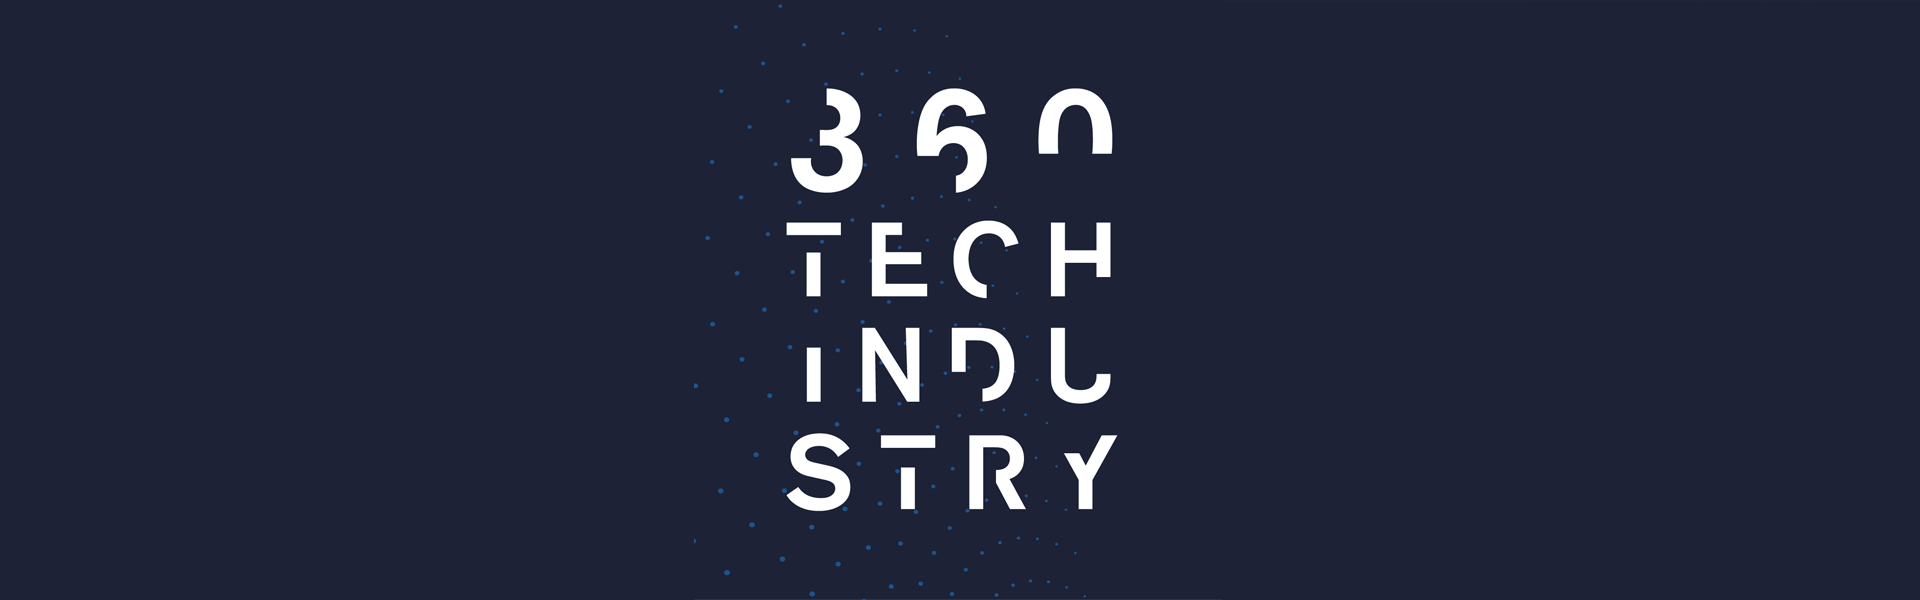 360 TECH INDUSTRY - Feira Internacional da Indústria 4.0, Robótica, Automação e Compósitos